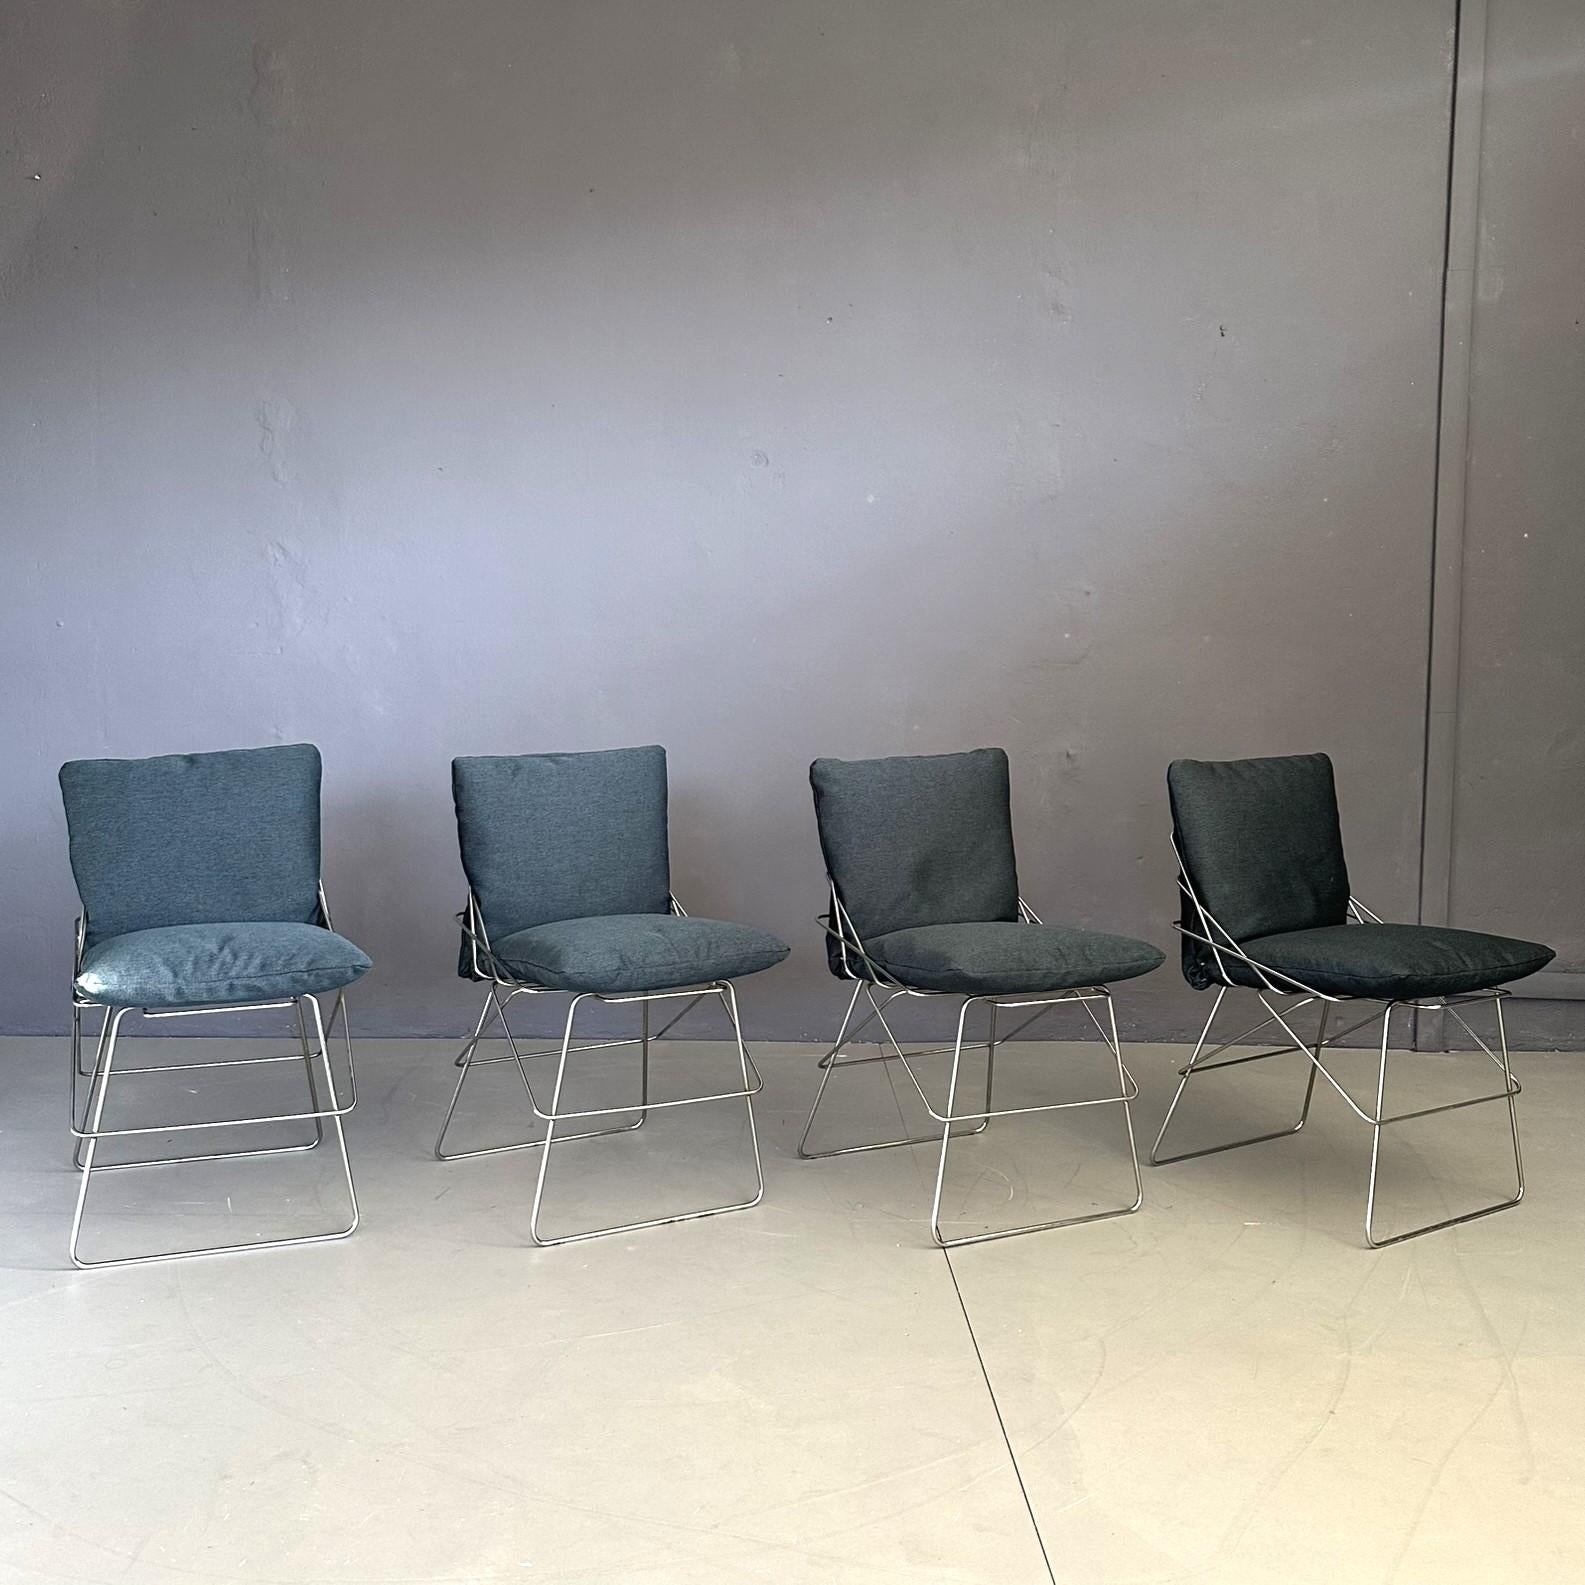 
Ensemble de quatre chaises modèle SOF SOF design by Enzo Mari, for Daride 70s. Structure en tiges de métal chromé, avec assise et dossier rembourrés en tissu bleu.
Siège qui résume l'essentialité et l'élégance du design d'Eleg. Créée par Driade en